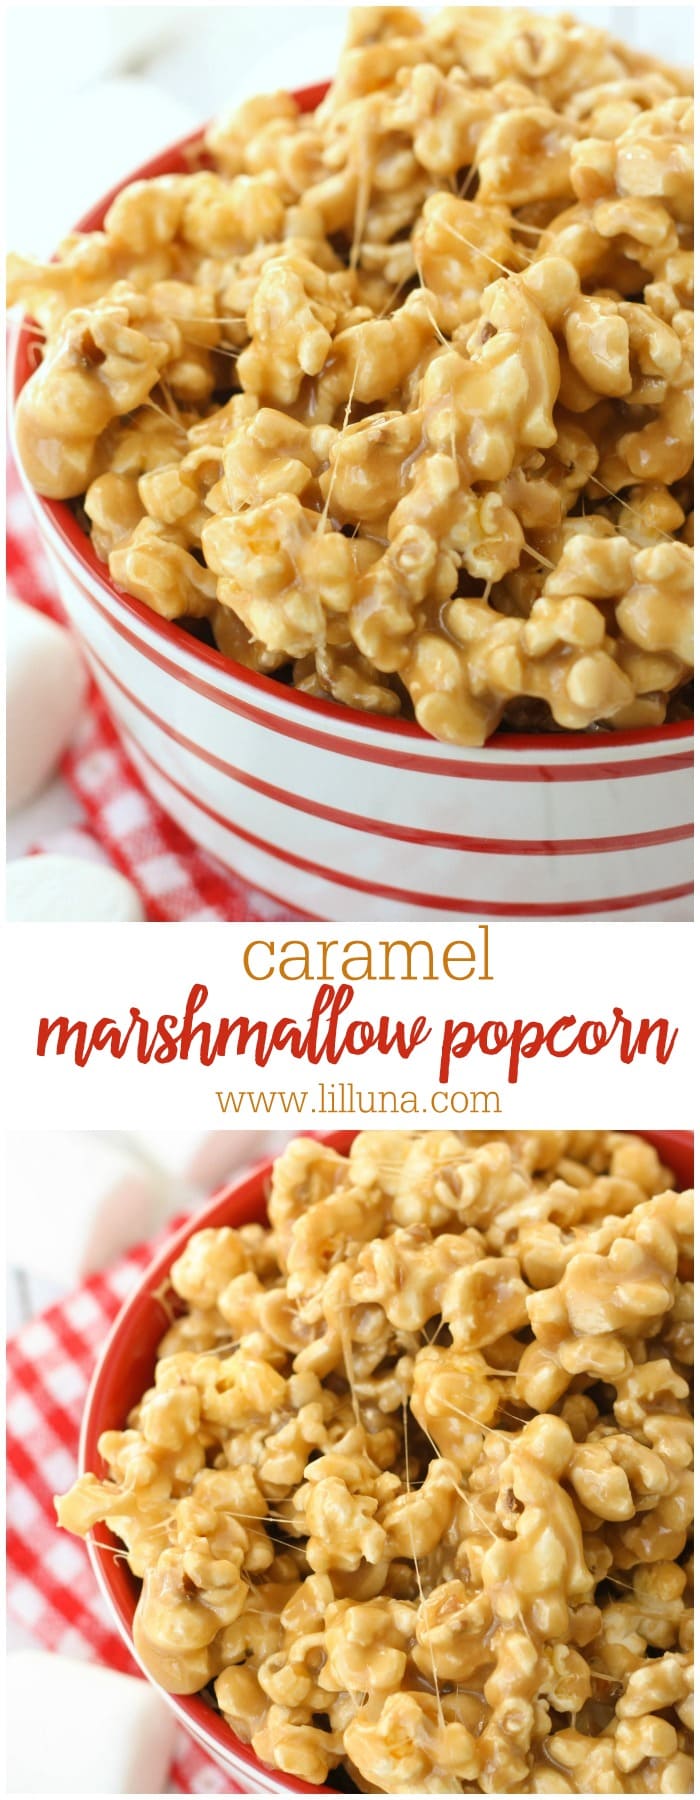 5-Minute Caramel Marshmallow Popcorn recipe - SOOO good and gooey!